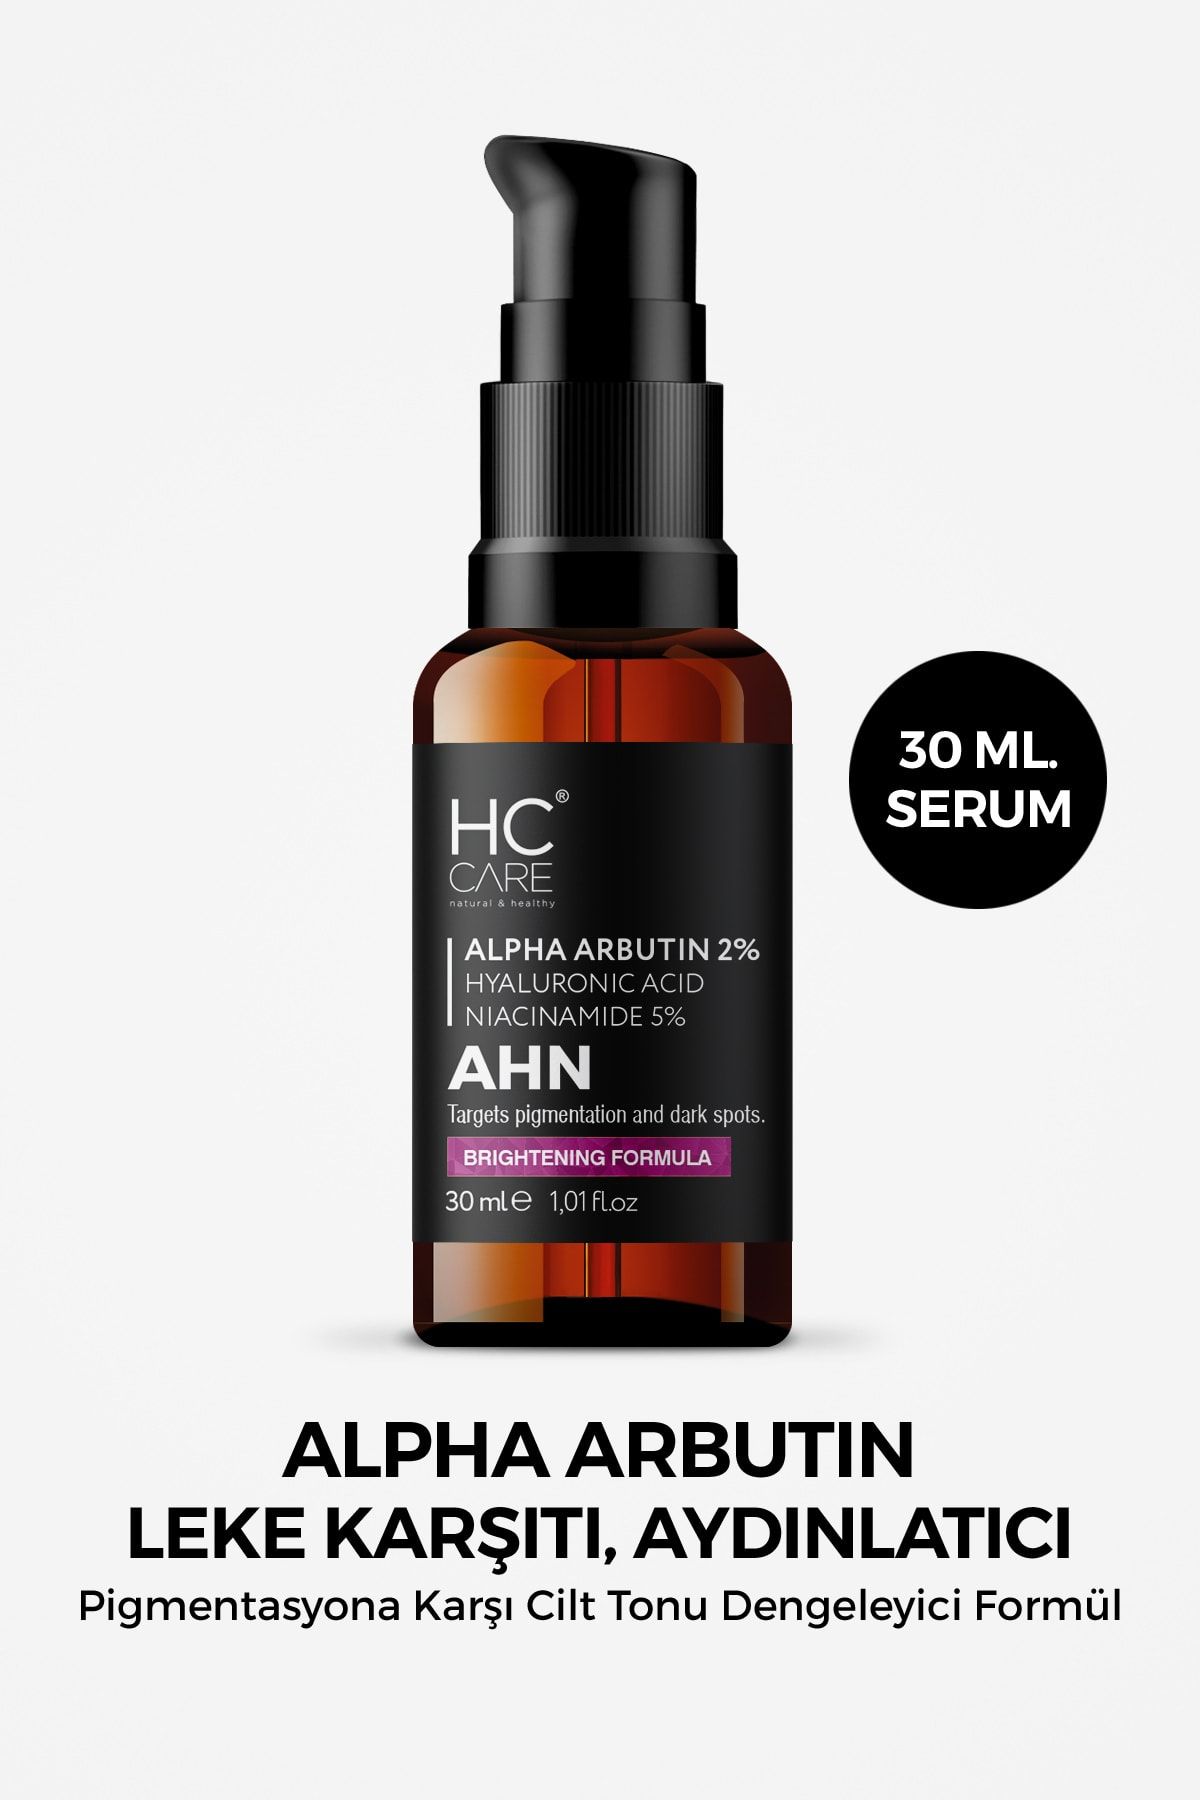 HC Care Alpha Arbutin %2 Hyaluronic Acid, Niacinamide %5 Leke Karşıtı Aydınlatıcı Serum - 30ml